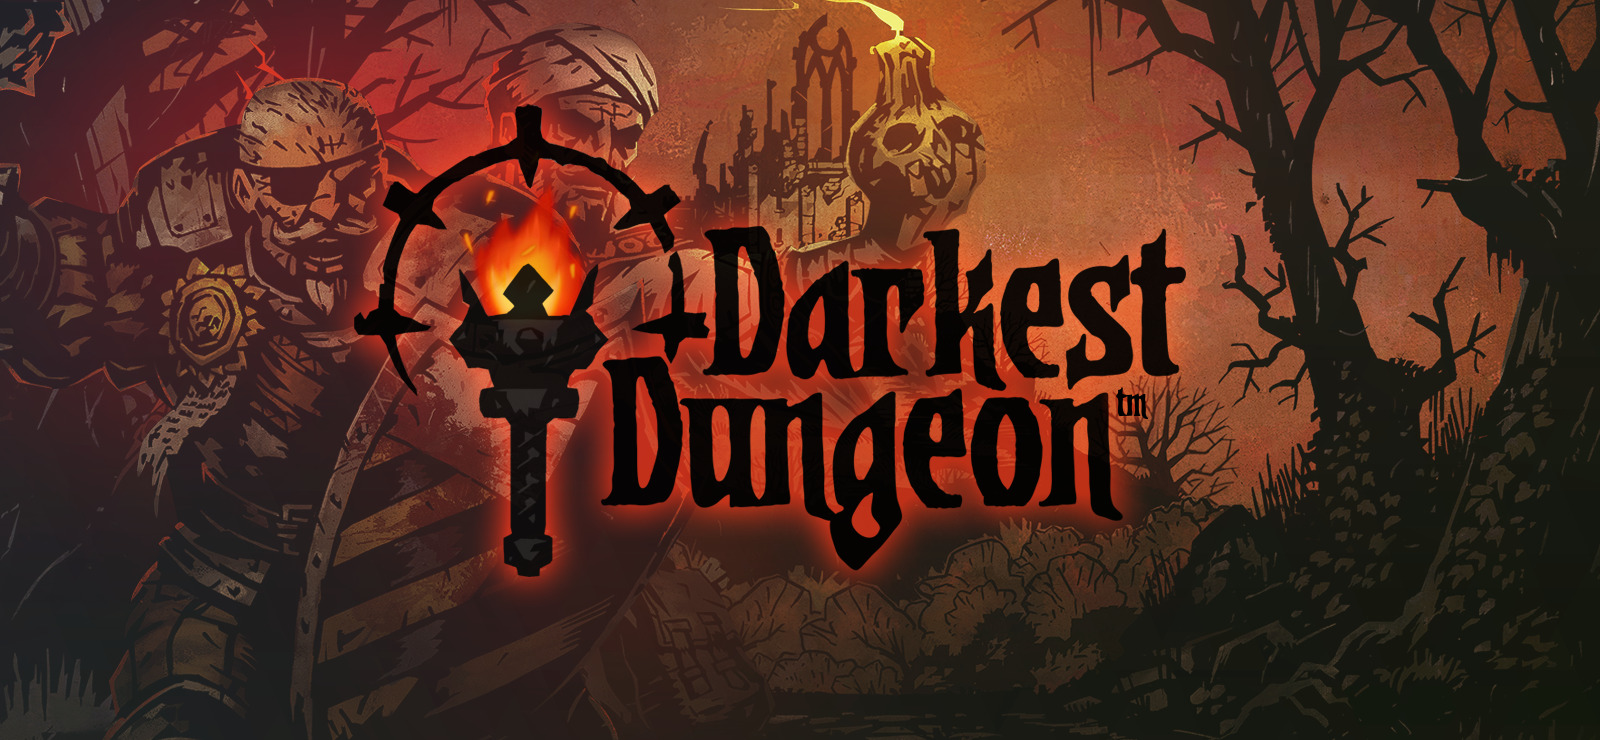 darkest dungeon size quote